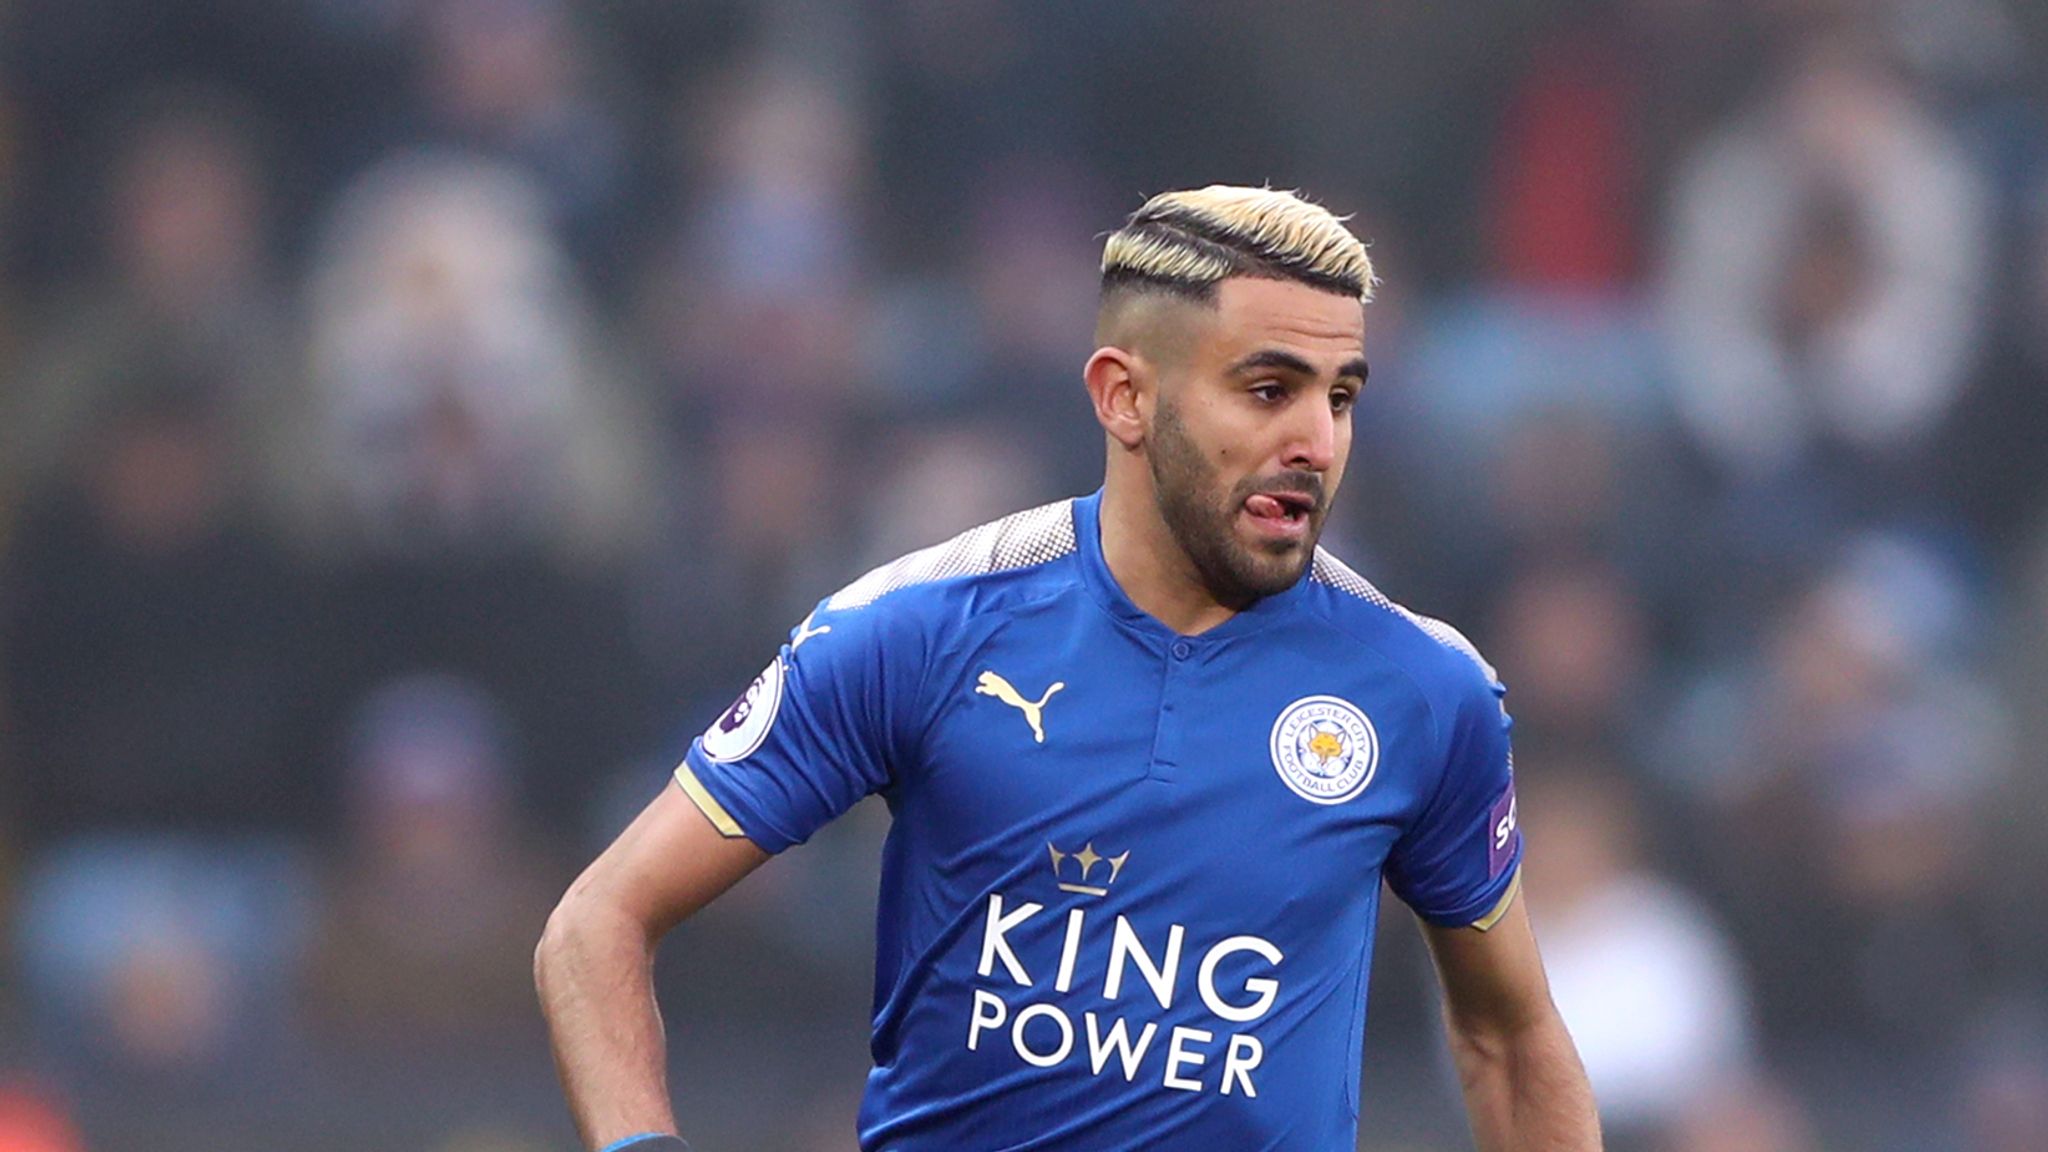 Mahrez nổi danh trong màu áo Leicester - RM trong bóng đá là gì?